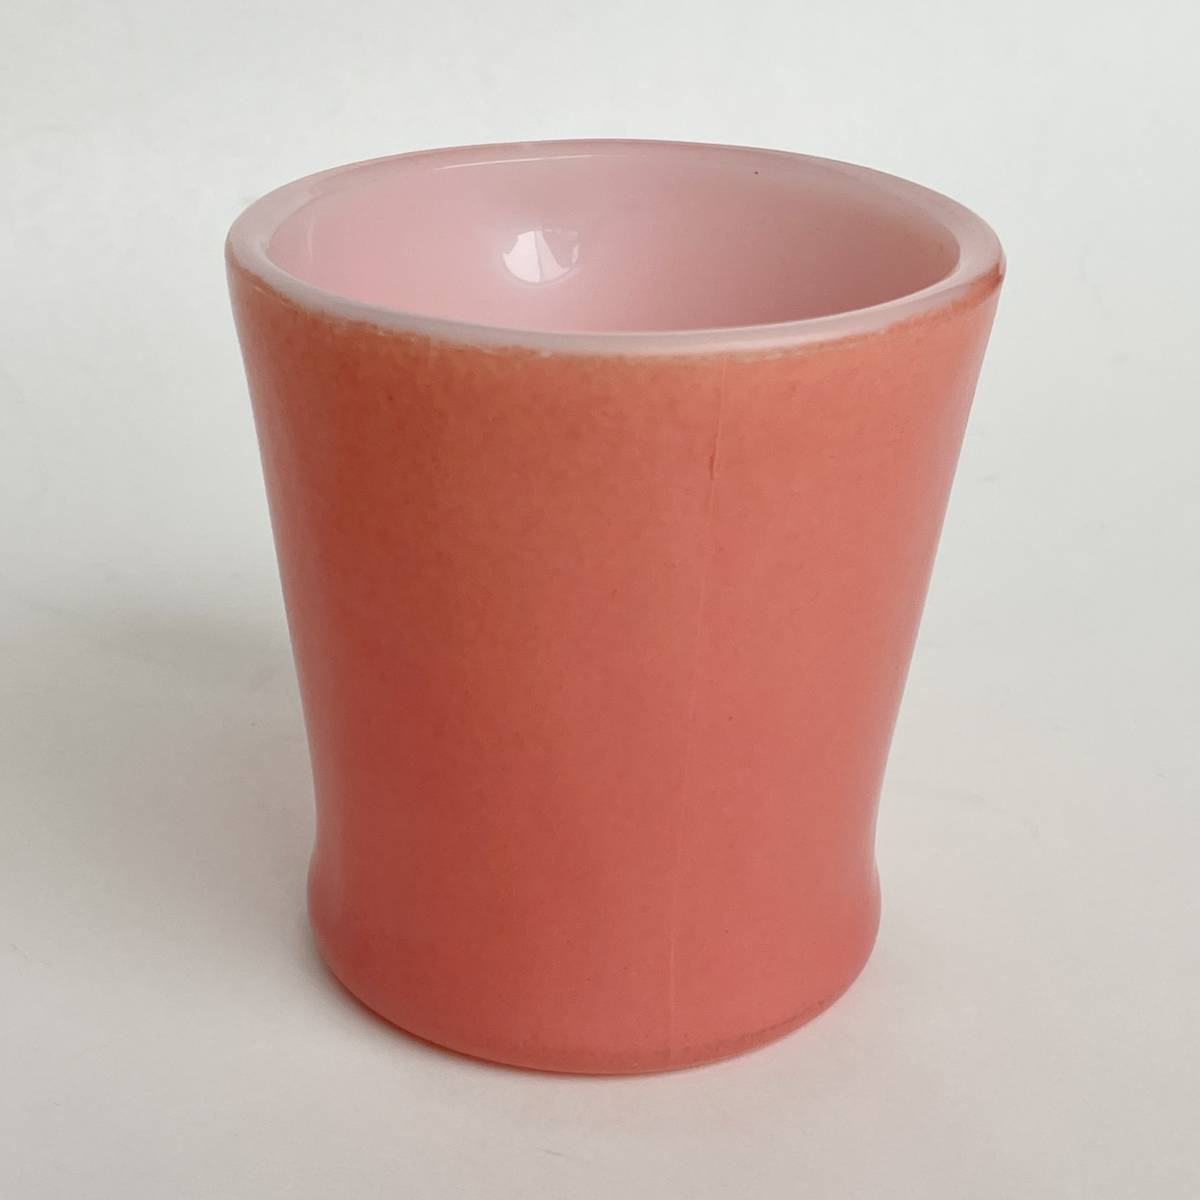 FIRE KING ファイヤーキング 濃いピンク 桜色 マグカップ Dハンドル ヴィンテージ 耐熱 ミルクグラス アメリカ製_画像2